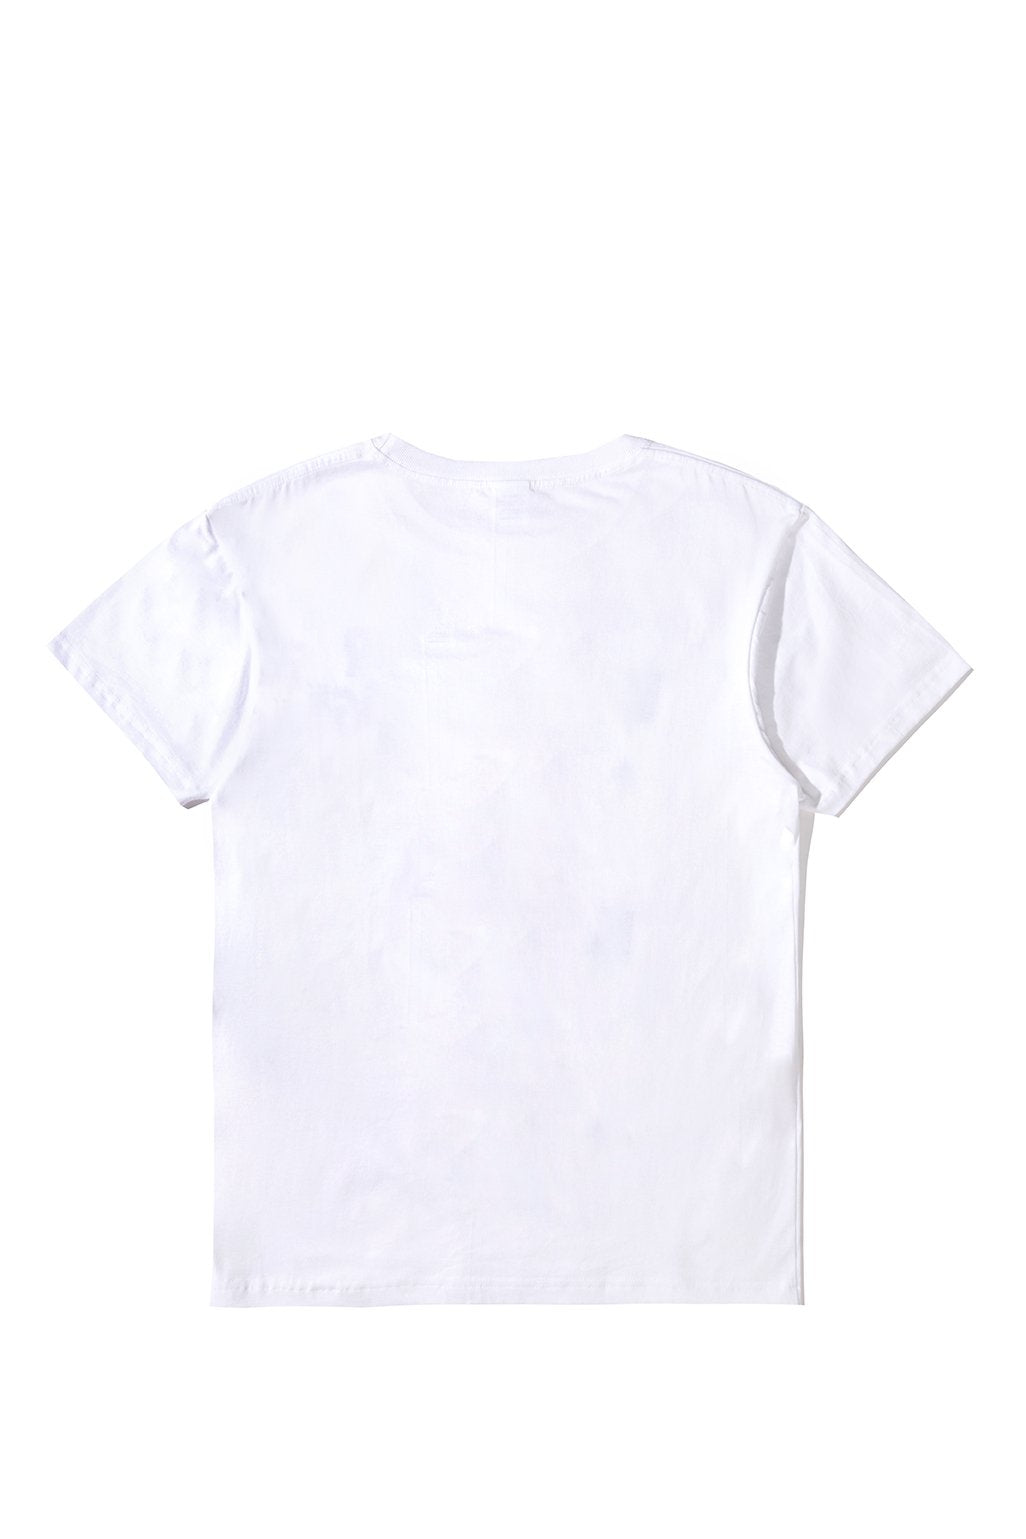 Goodfight X Wax Paper T-Shirt